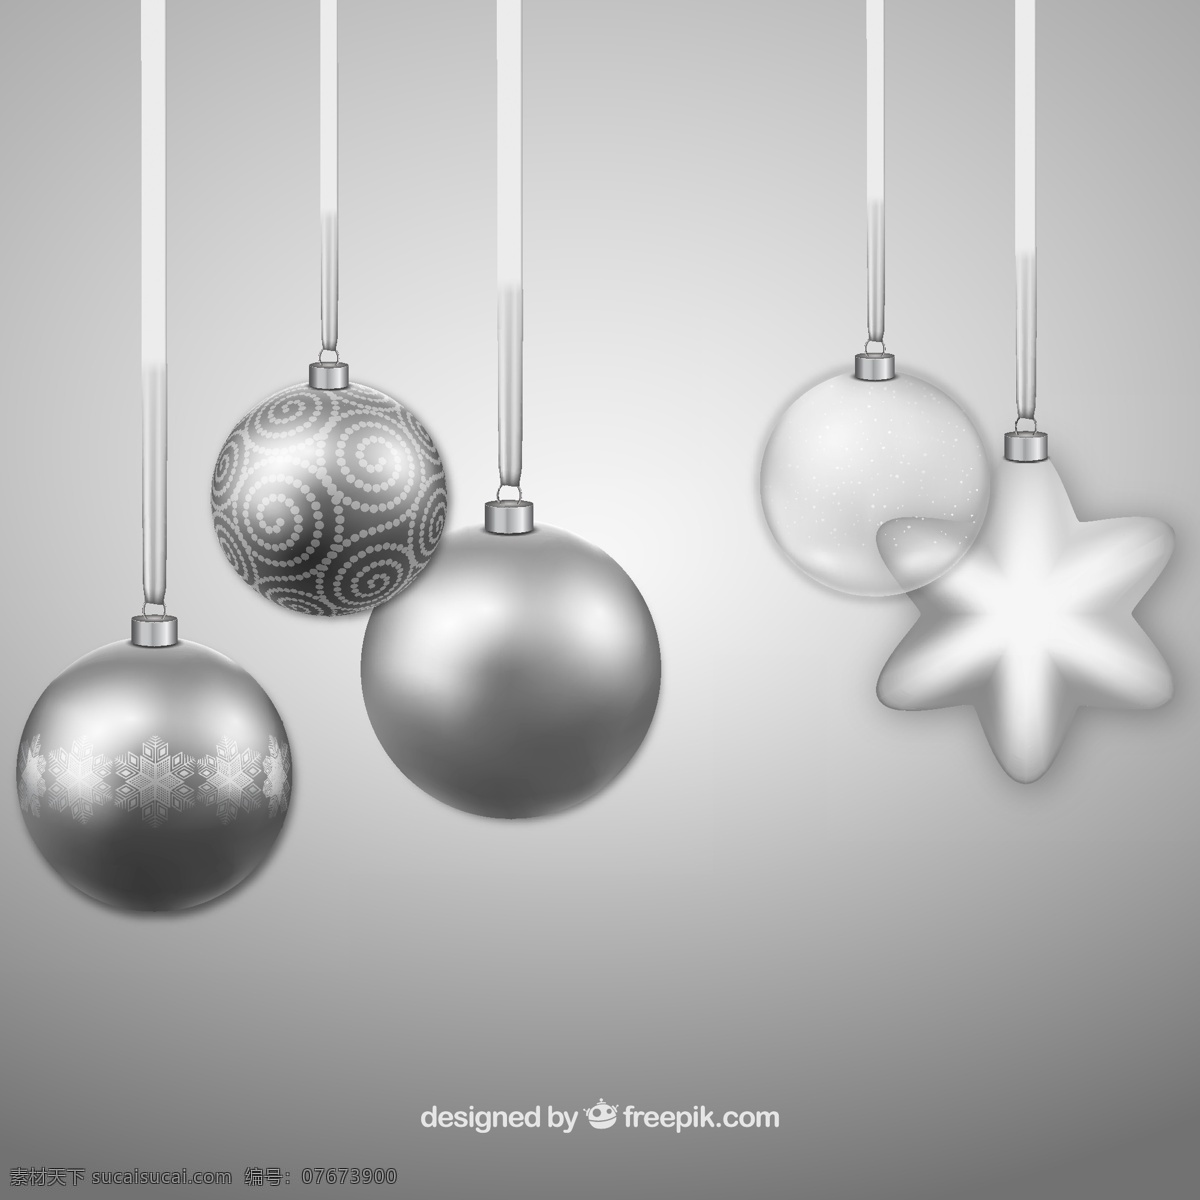 现实 银色 圣诞球 背景 圣诞星 装饰品 圣诞快乐 冬天 快乐 圣诞背景 圣诞节 庆祝节日 玻璃 银 装饰元素 装饰 背景模糊 灰色